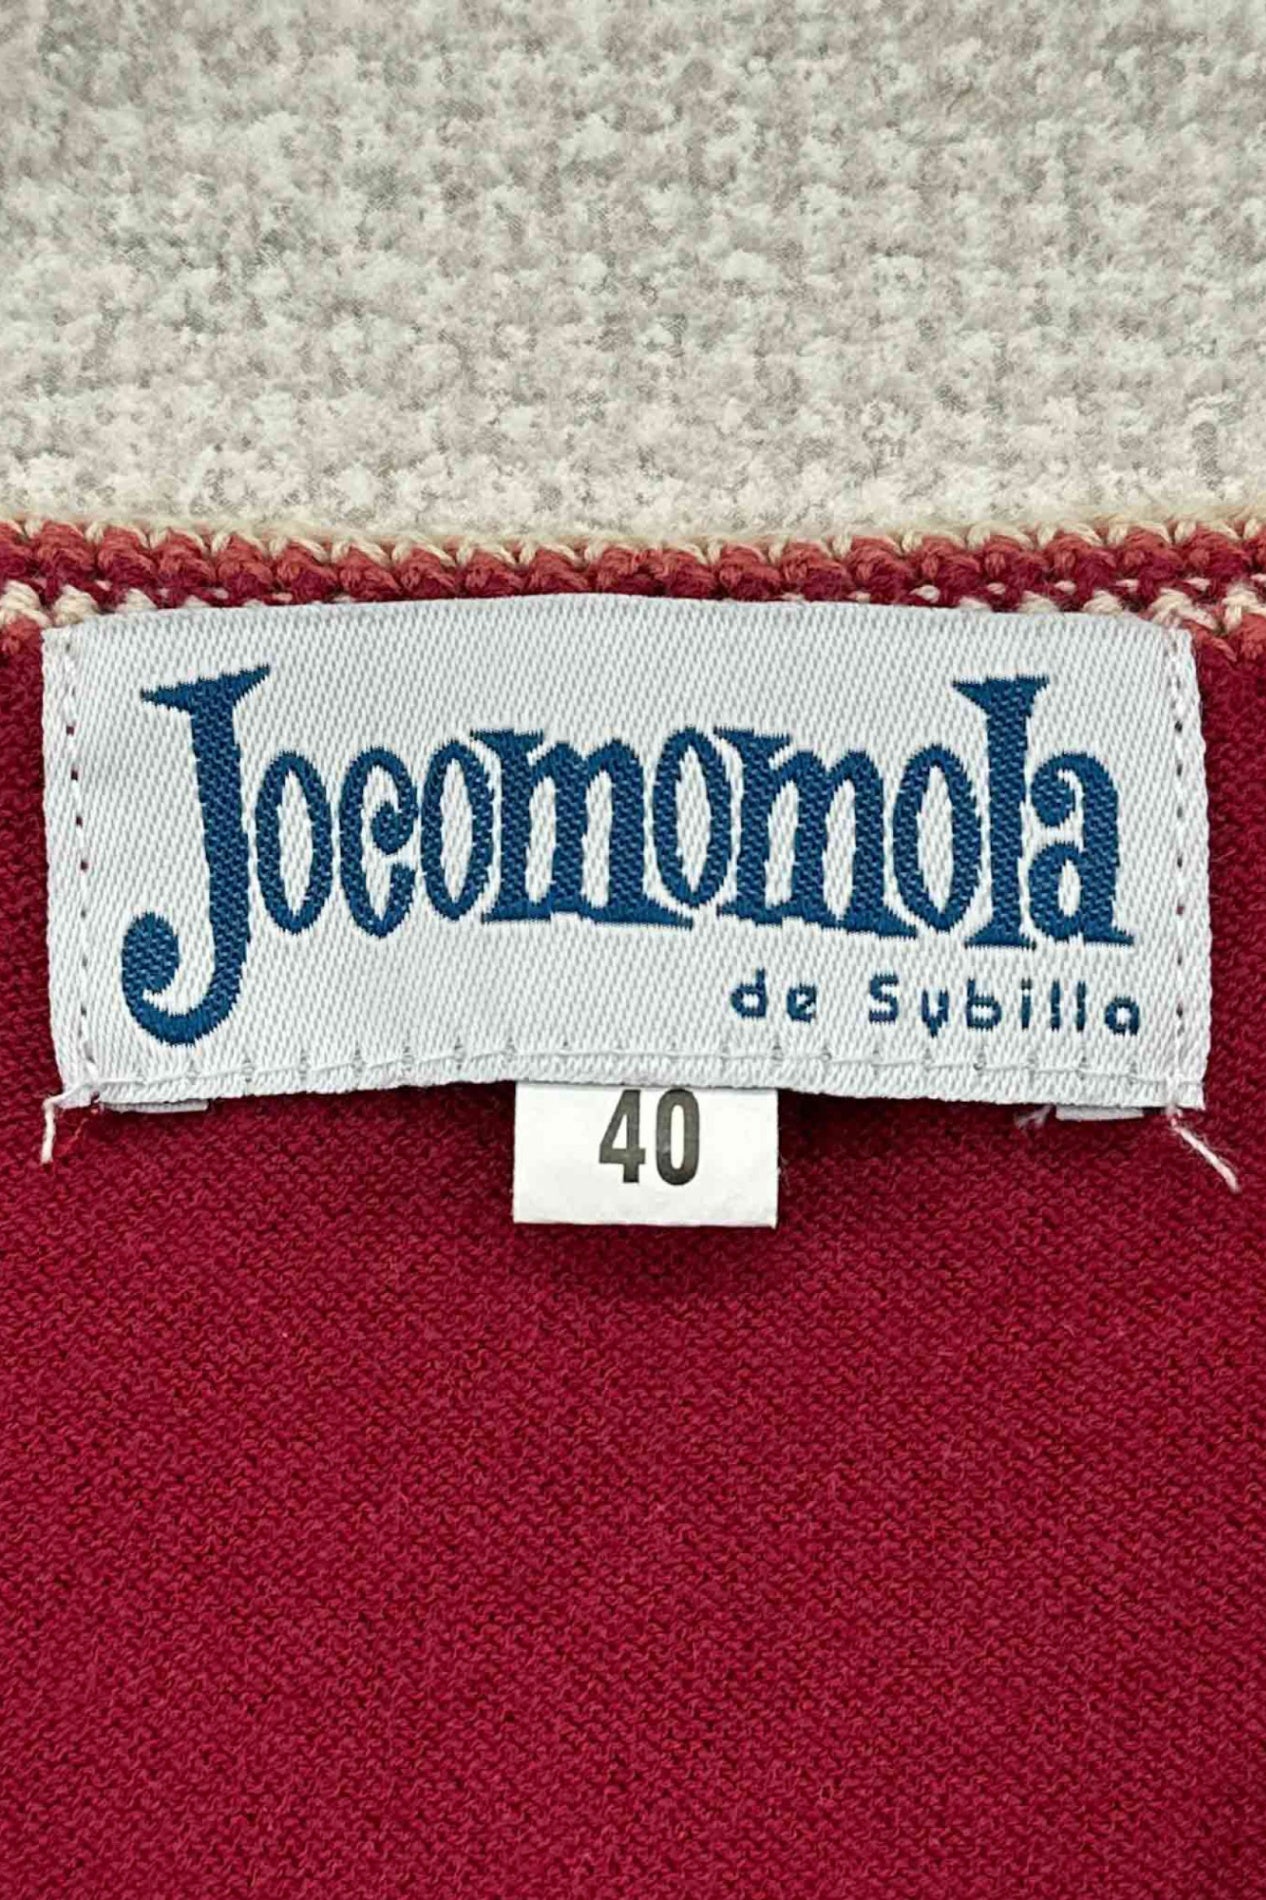 Jocomomola by sybilla red cardigan